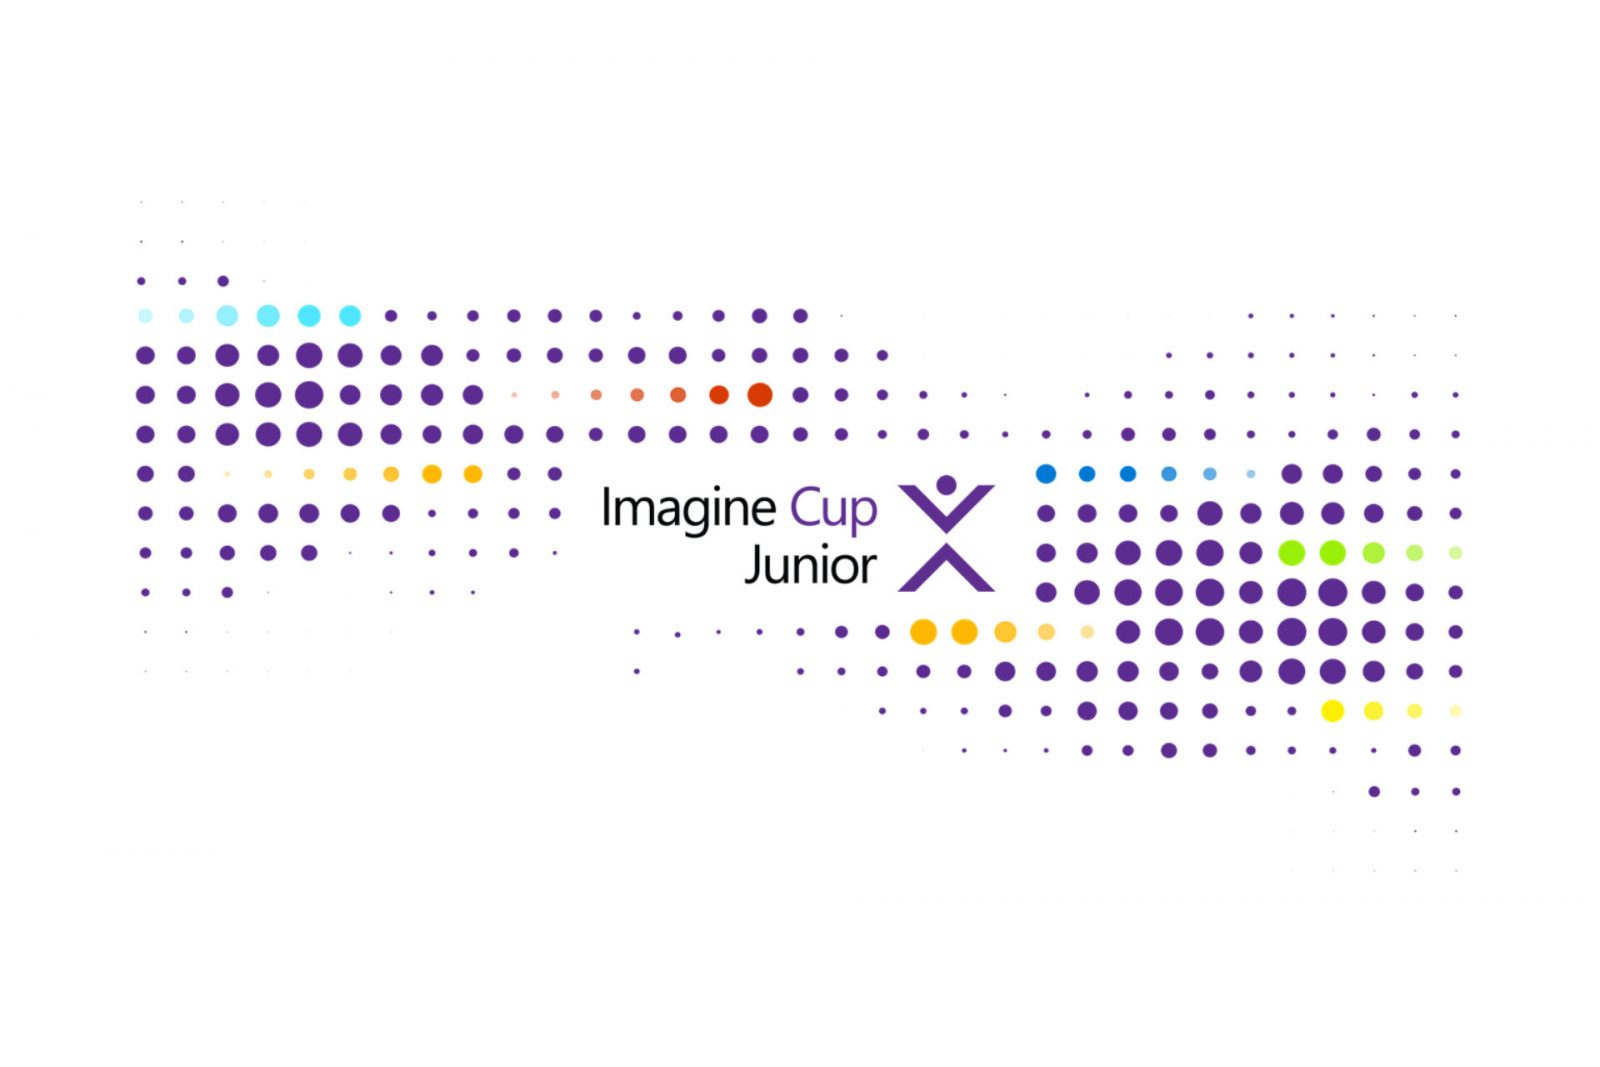 Логотип Imagine Cup Junior в центре графики из разноцветных точек